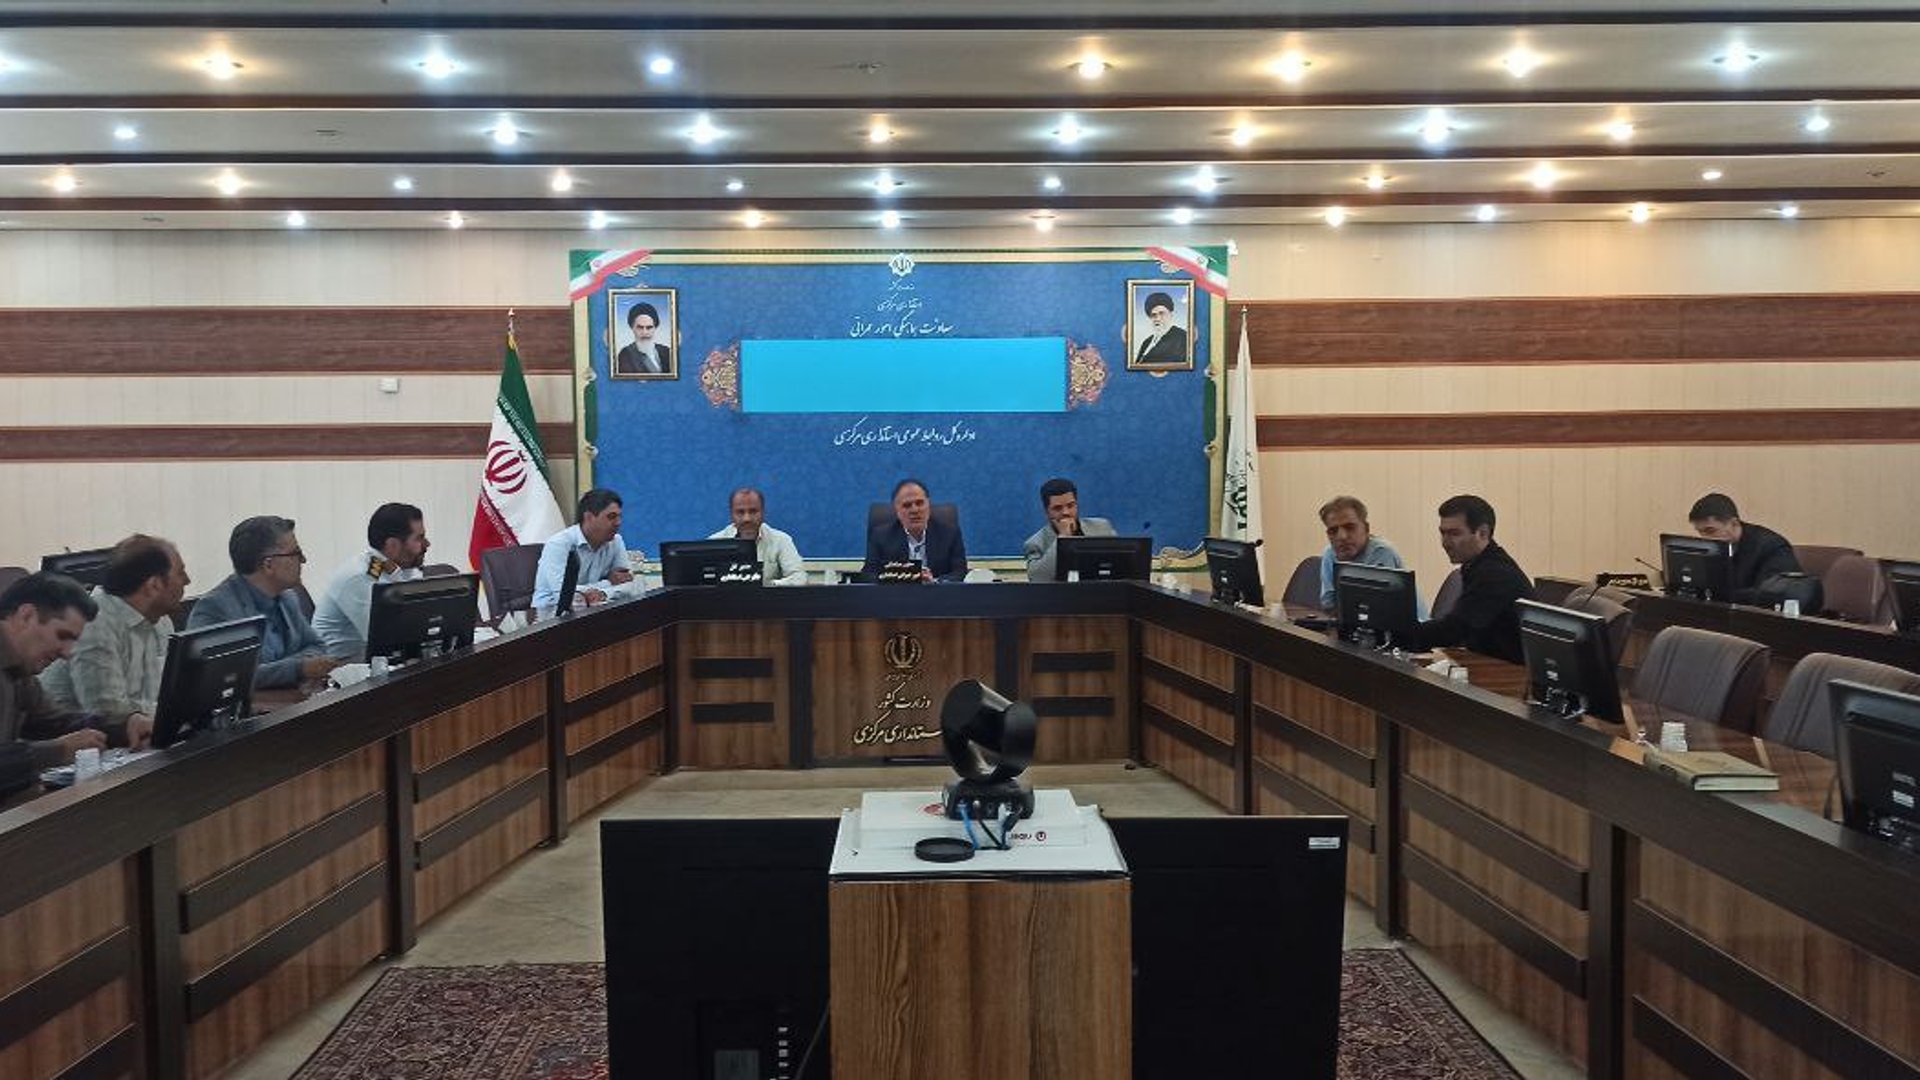 جلسه شورای ترافیک استان با محوریت پیاده رو سازی هسته مرکزی اراک برگزار شد.